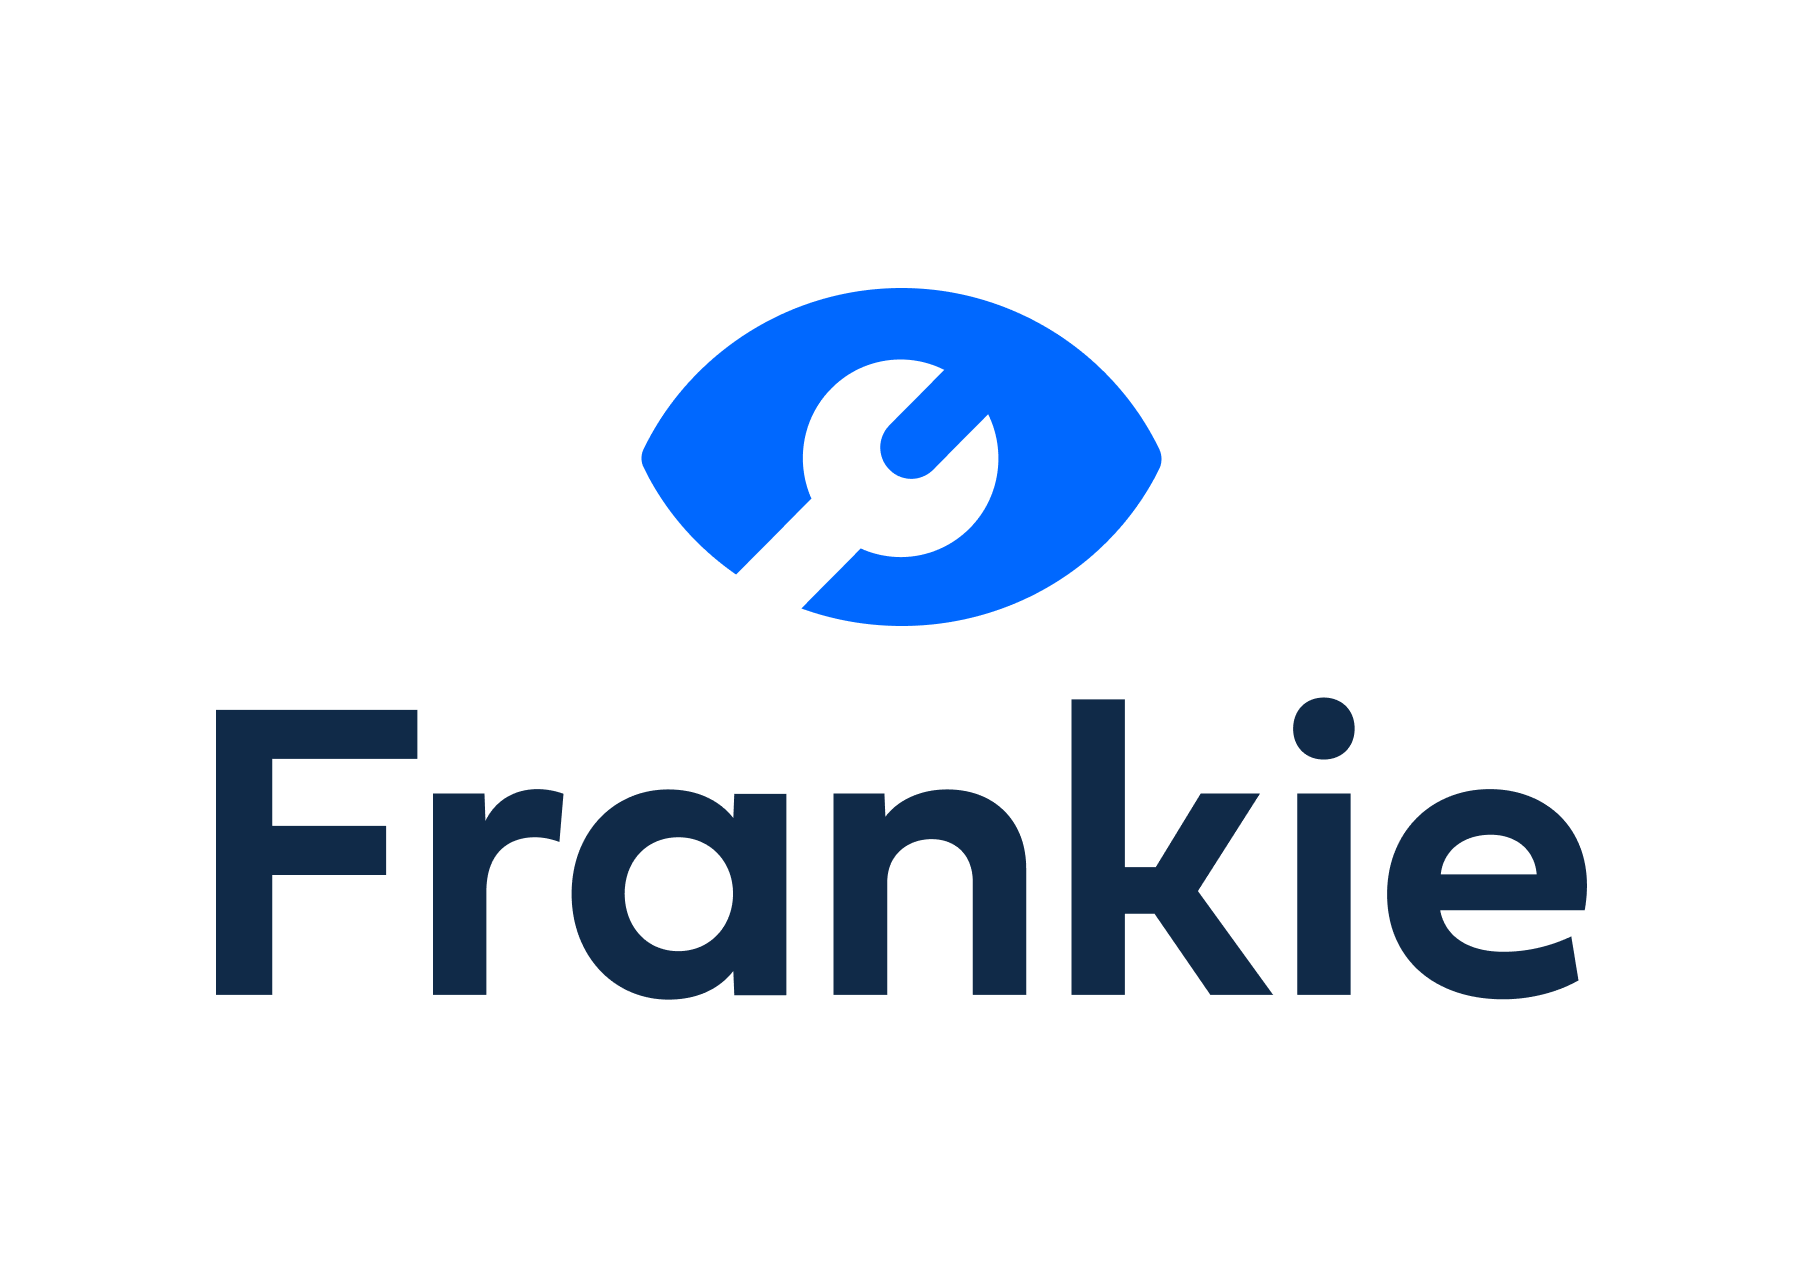 Frankie - tellfrankie.com